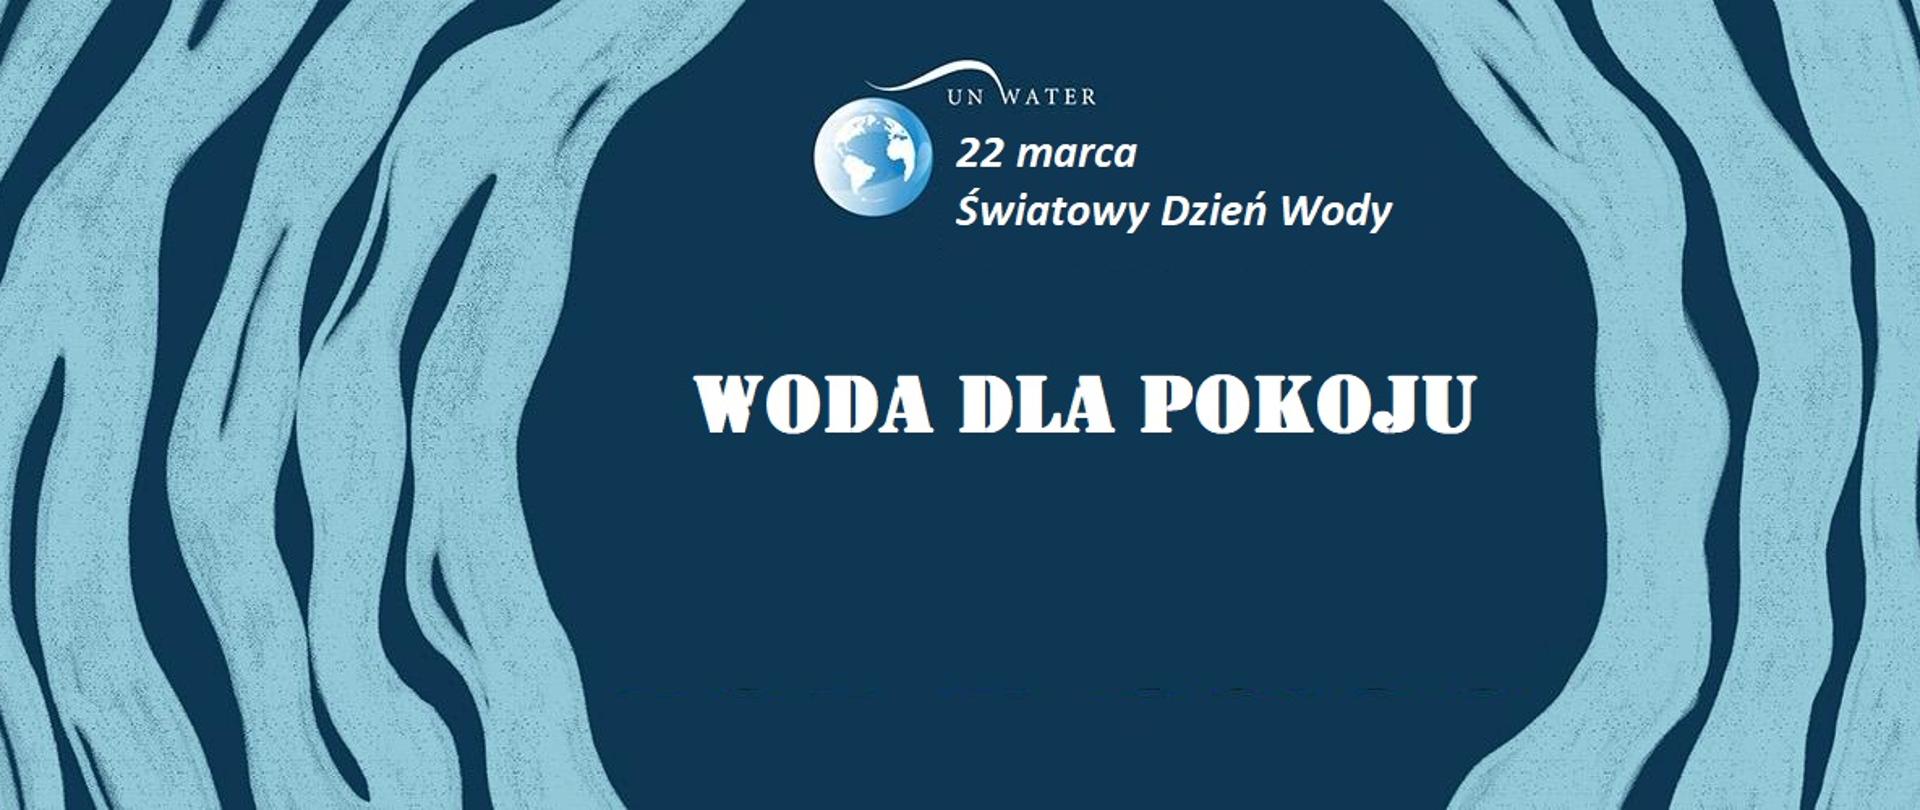 22 marca Światowy Dzień Wody Woda dla pokoju